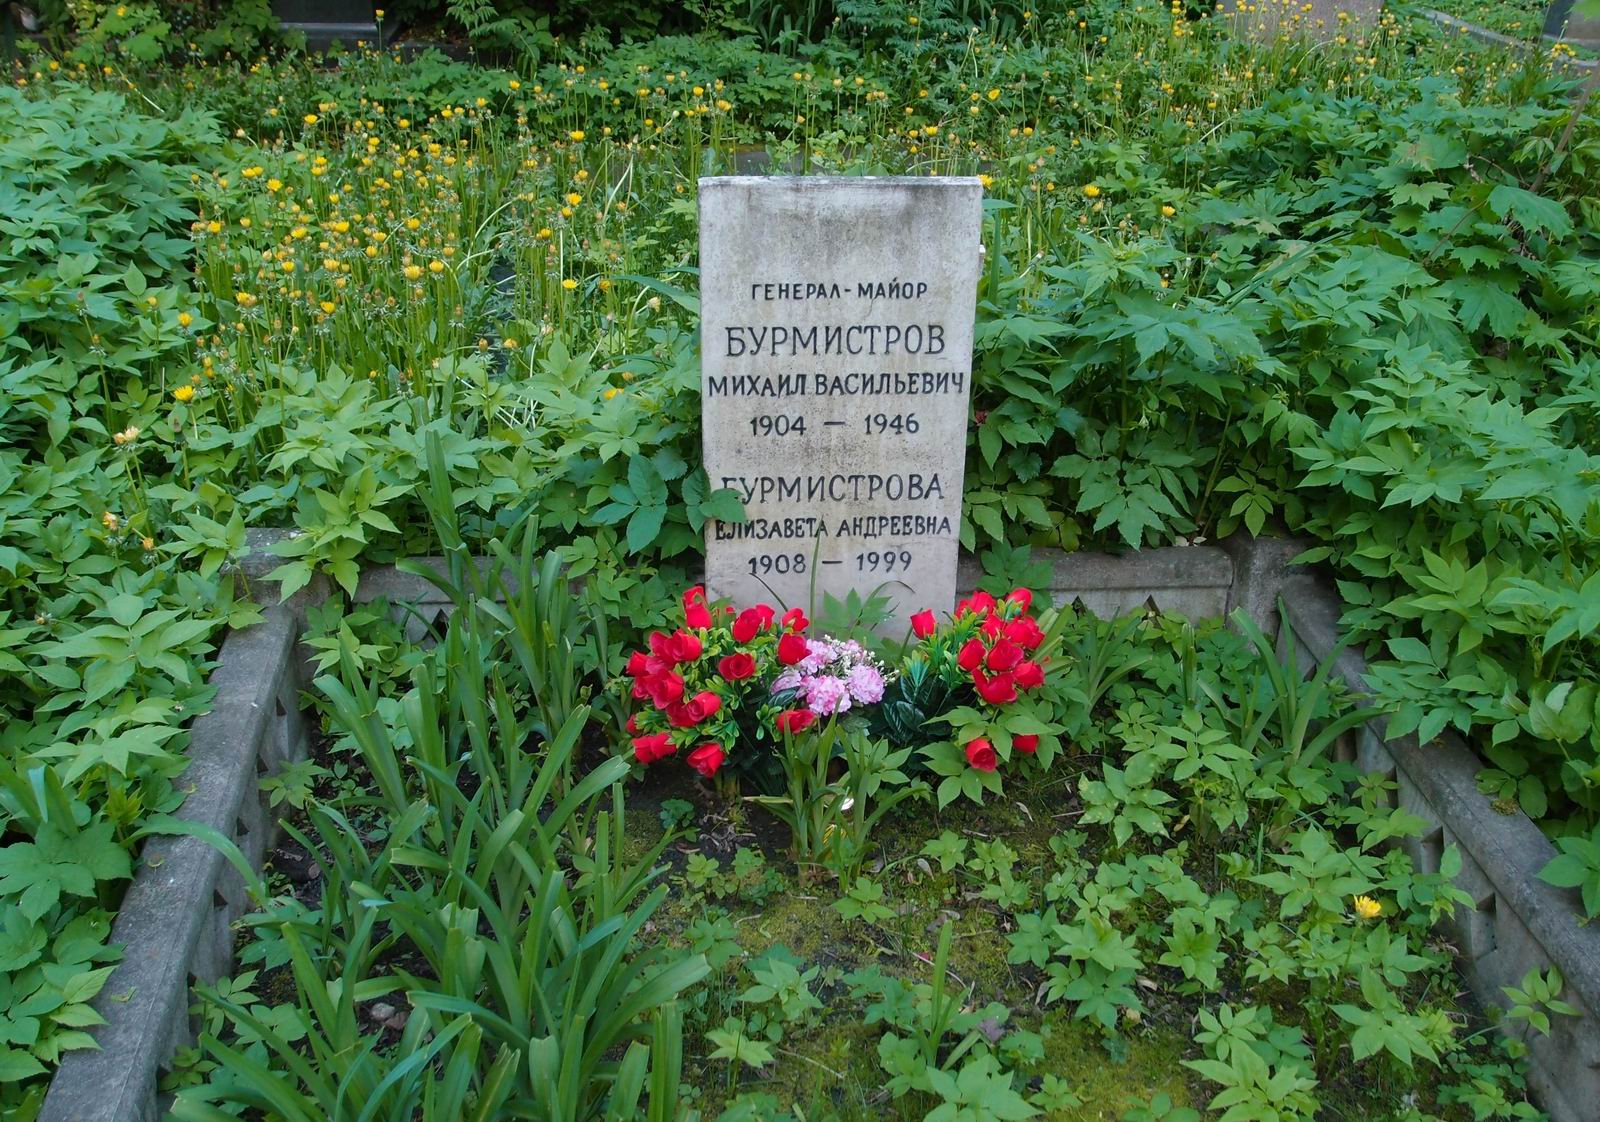 Памятник на могиле Бурмистрова М.В. (1904–1946), на Новодевичьем кладбище (4–14–14).